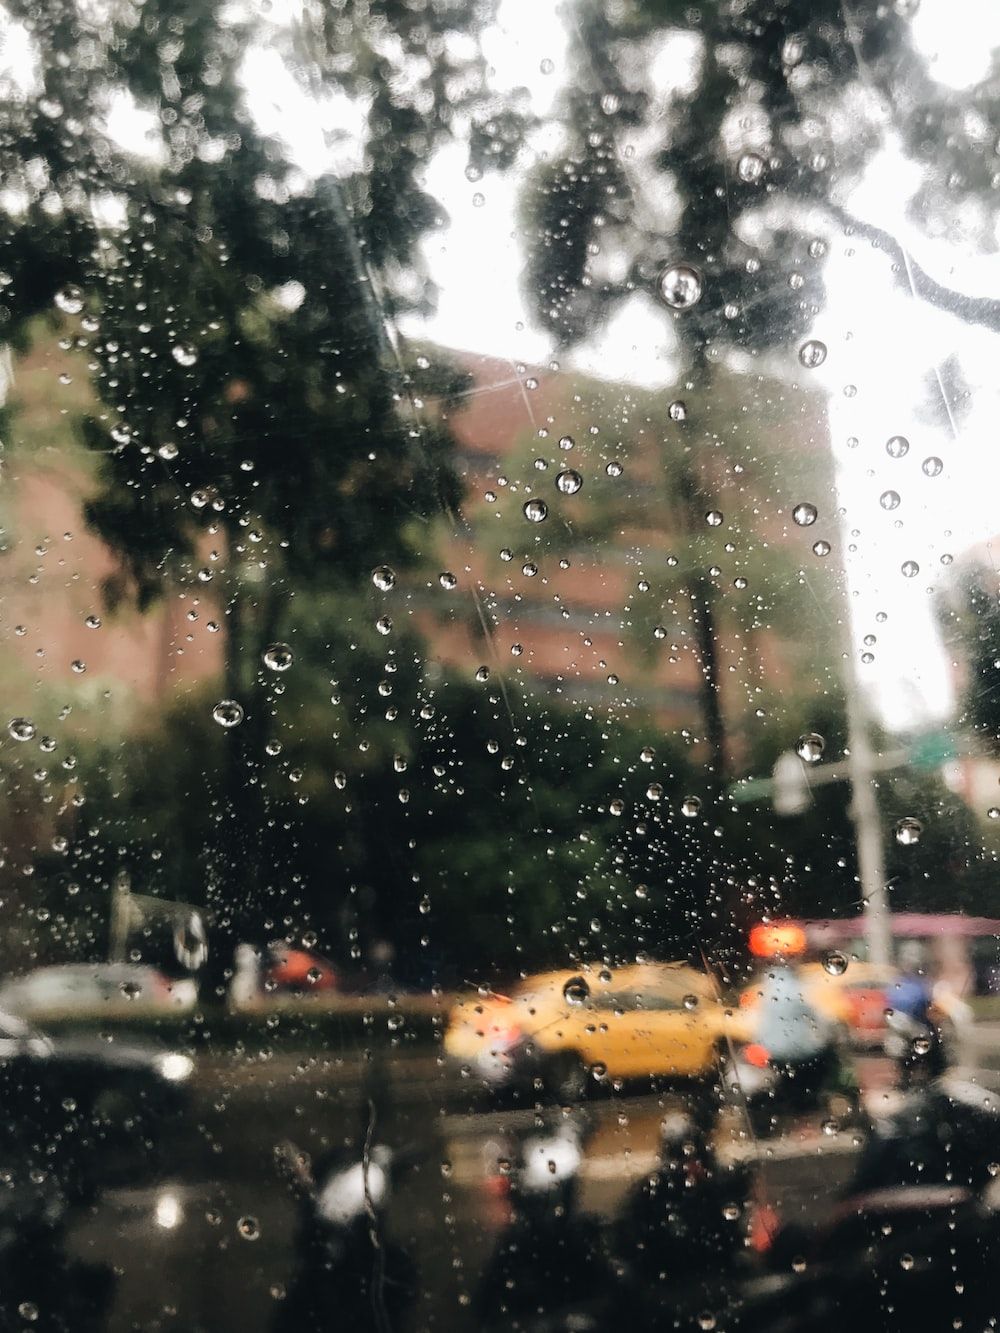  Regen Hintergrundbild 1000x1333. Foto zum Thema Blick auf eine Straße durch ein regenbedecktes Fenster